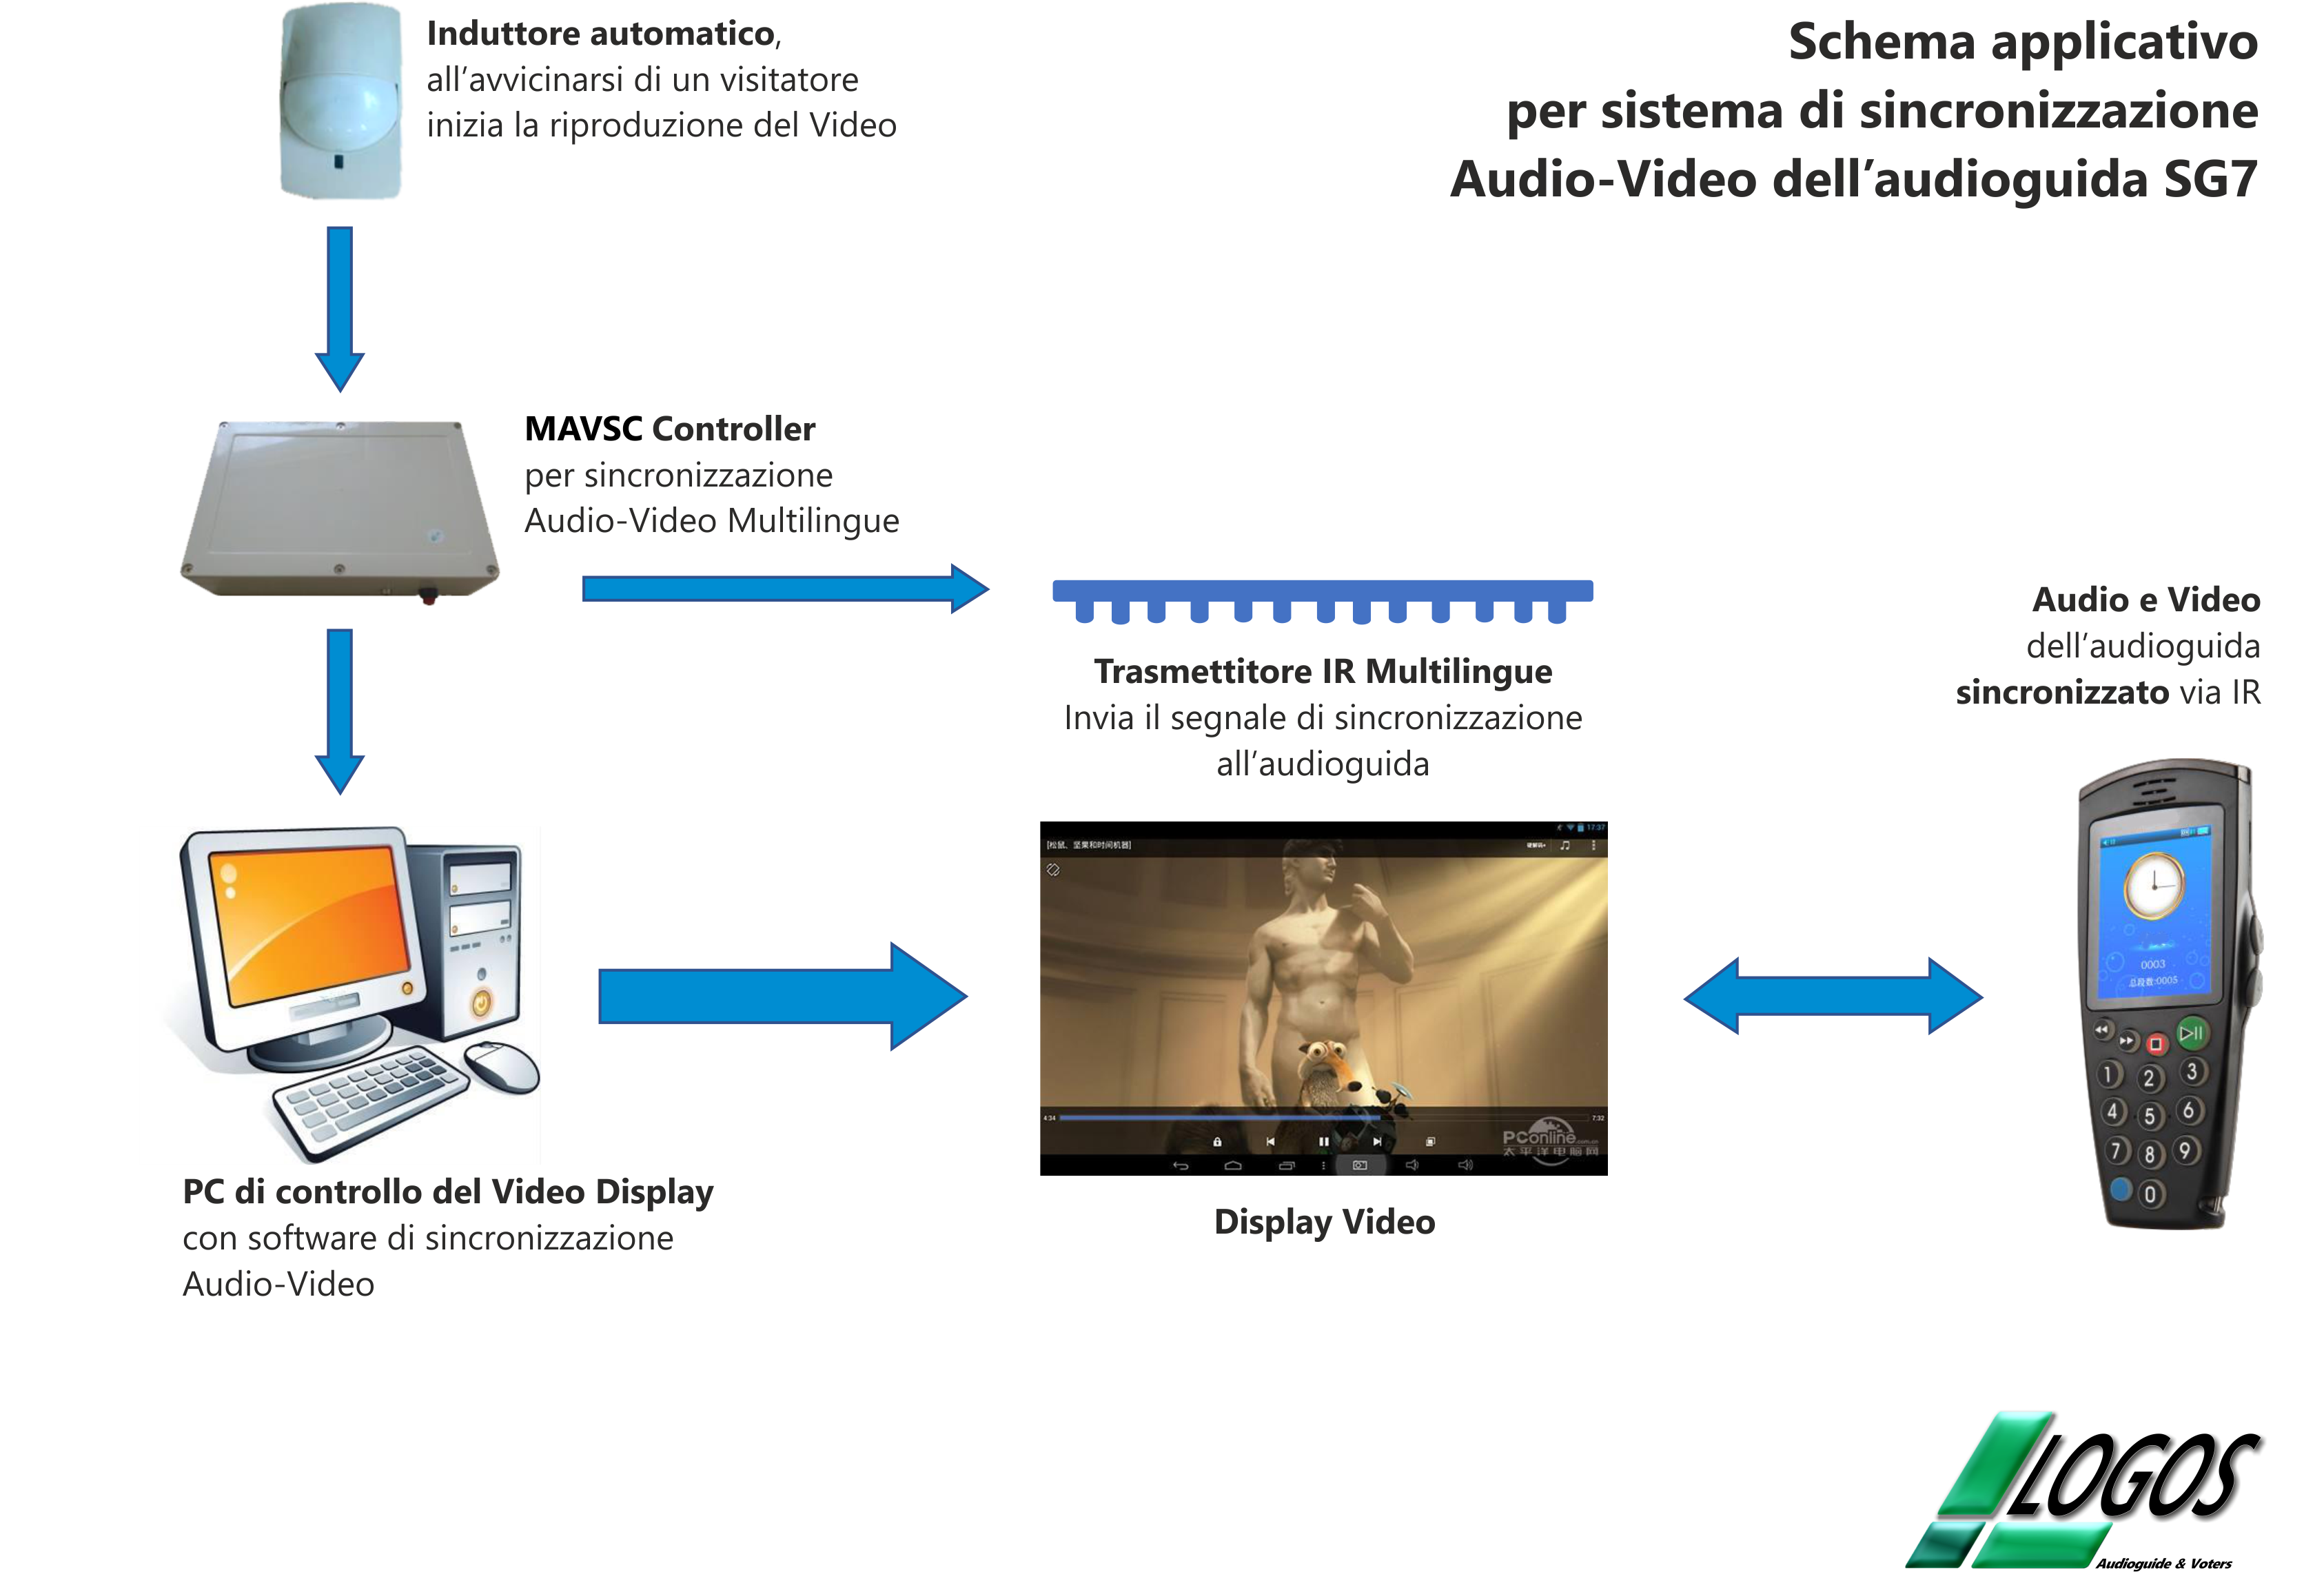 Schema applicativo sincronizzazione audio-video